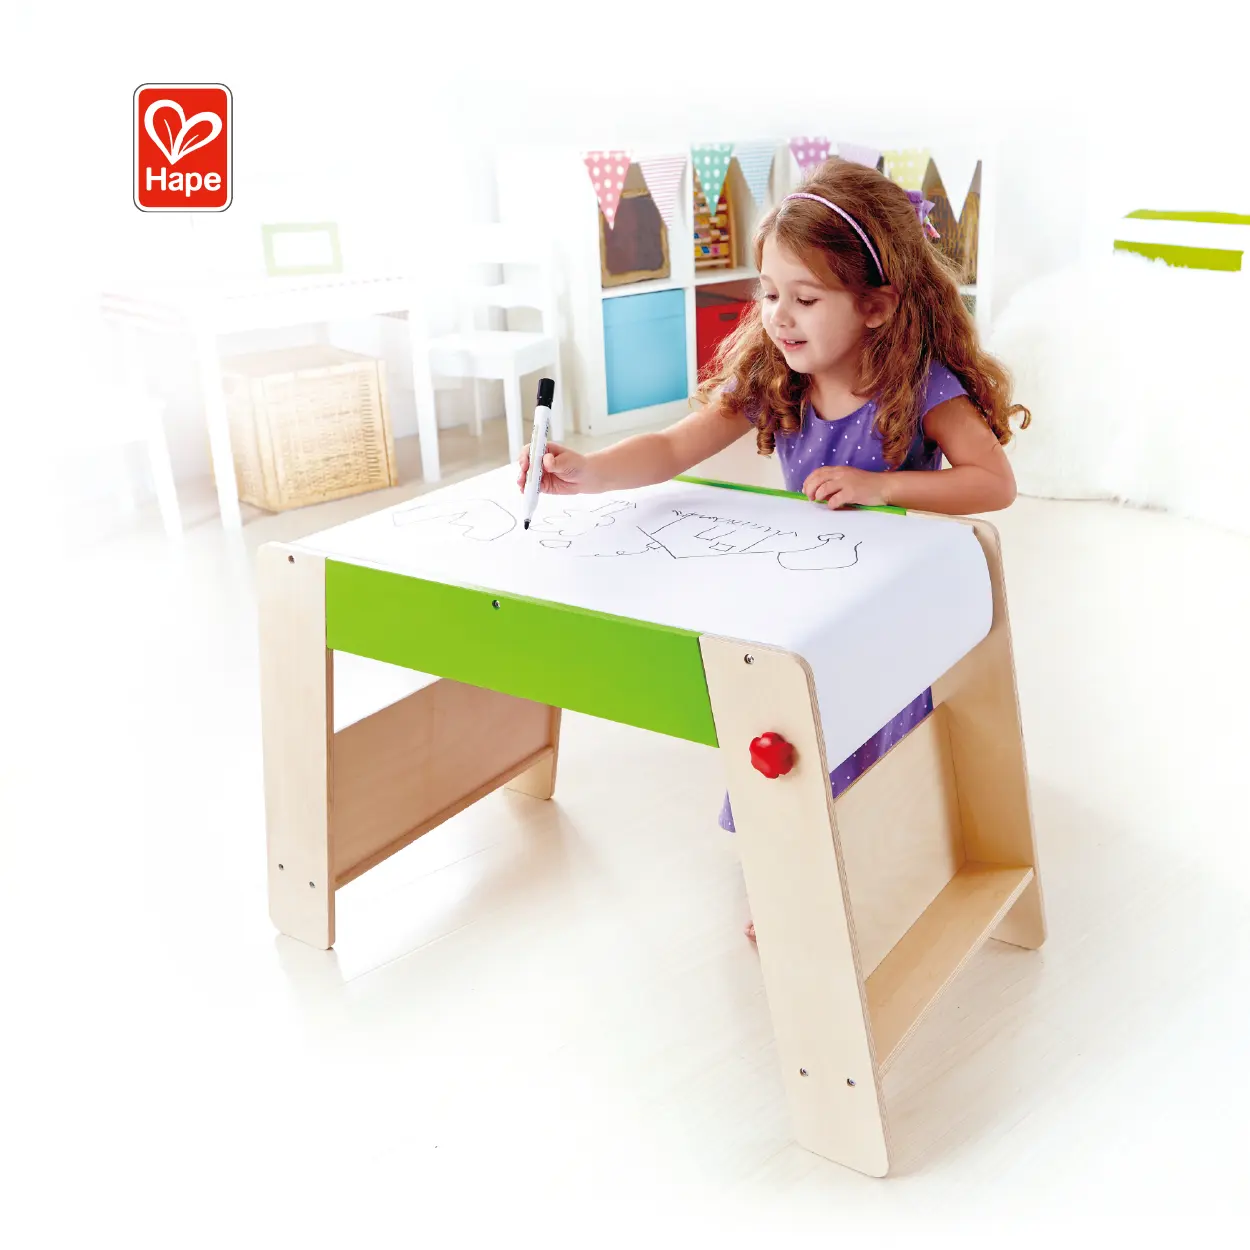 Nuophack — Station de jeu et tabouret, jouet en bois pour enfants de 3 ans